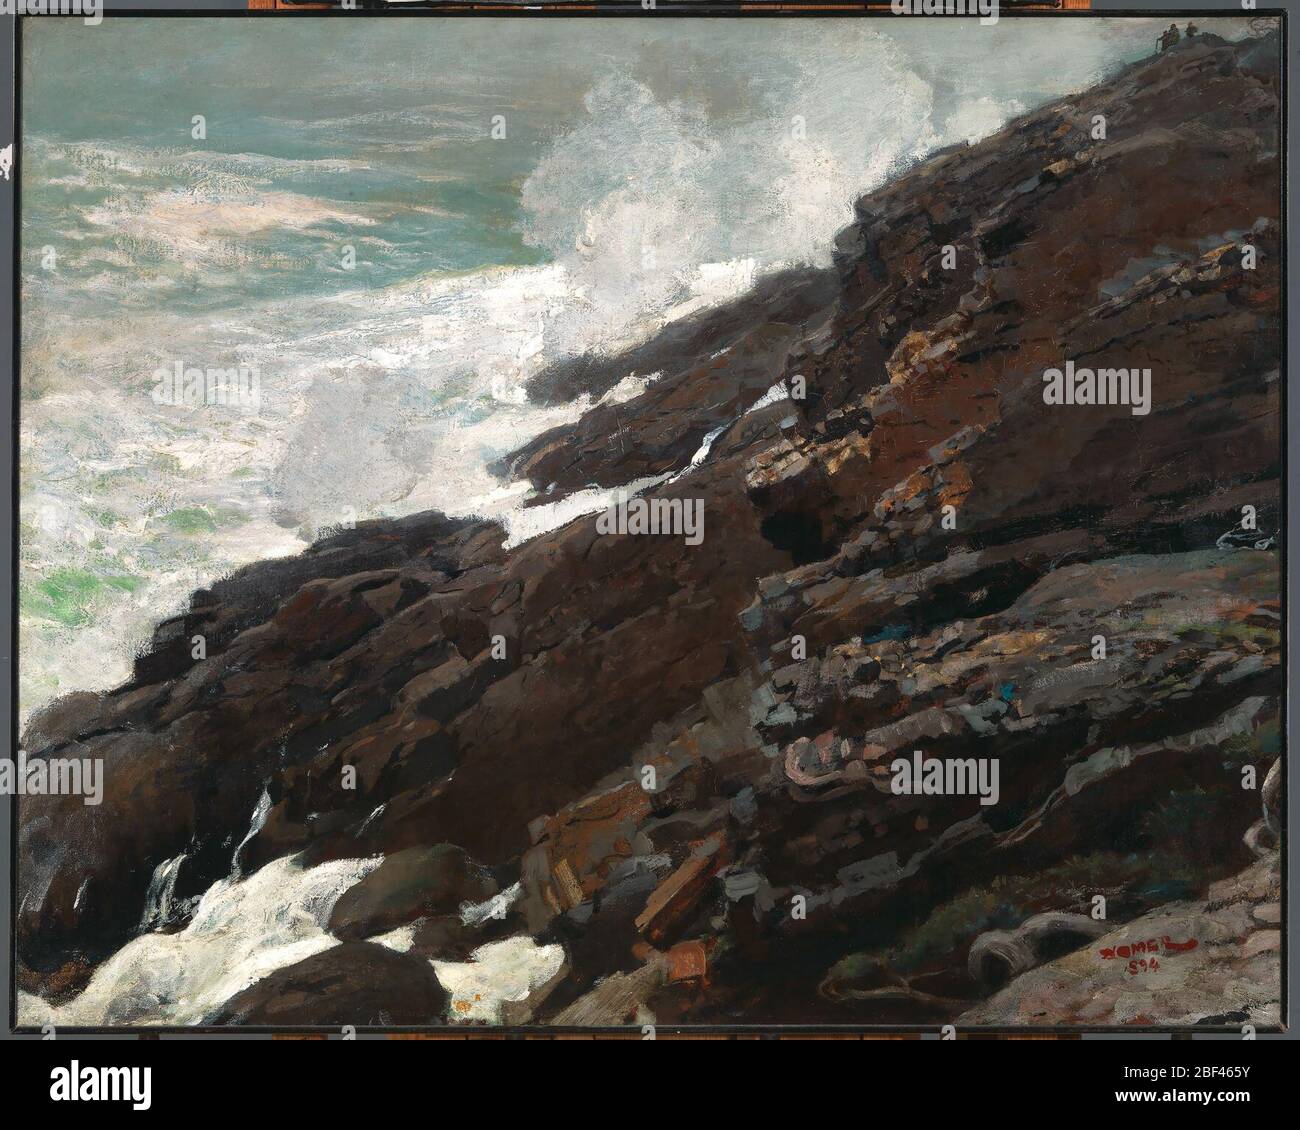 Costa de High Cliff de Maine. Winslow Homer era conocido por sus robustas representaciones de la naturaleza. En High Cliff, Costa de Maine, el océano asalta un poderoso e implacable asalto a un acantilado rocoso en el cuello de la Prout, uno de los lugares favoritos del artista en la costa. Foto de stock